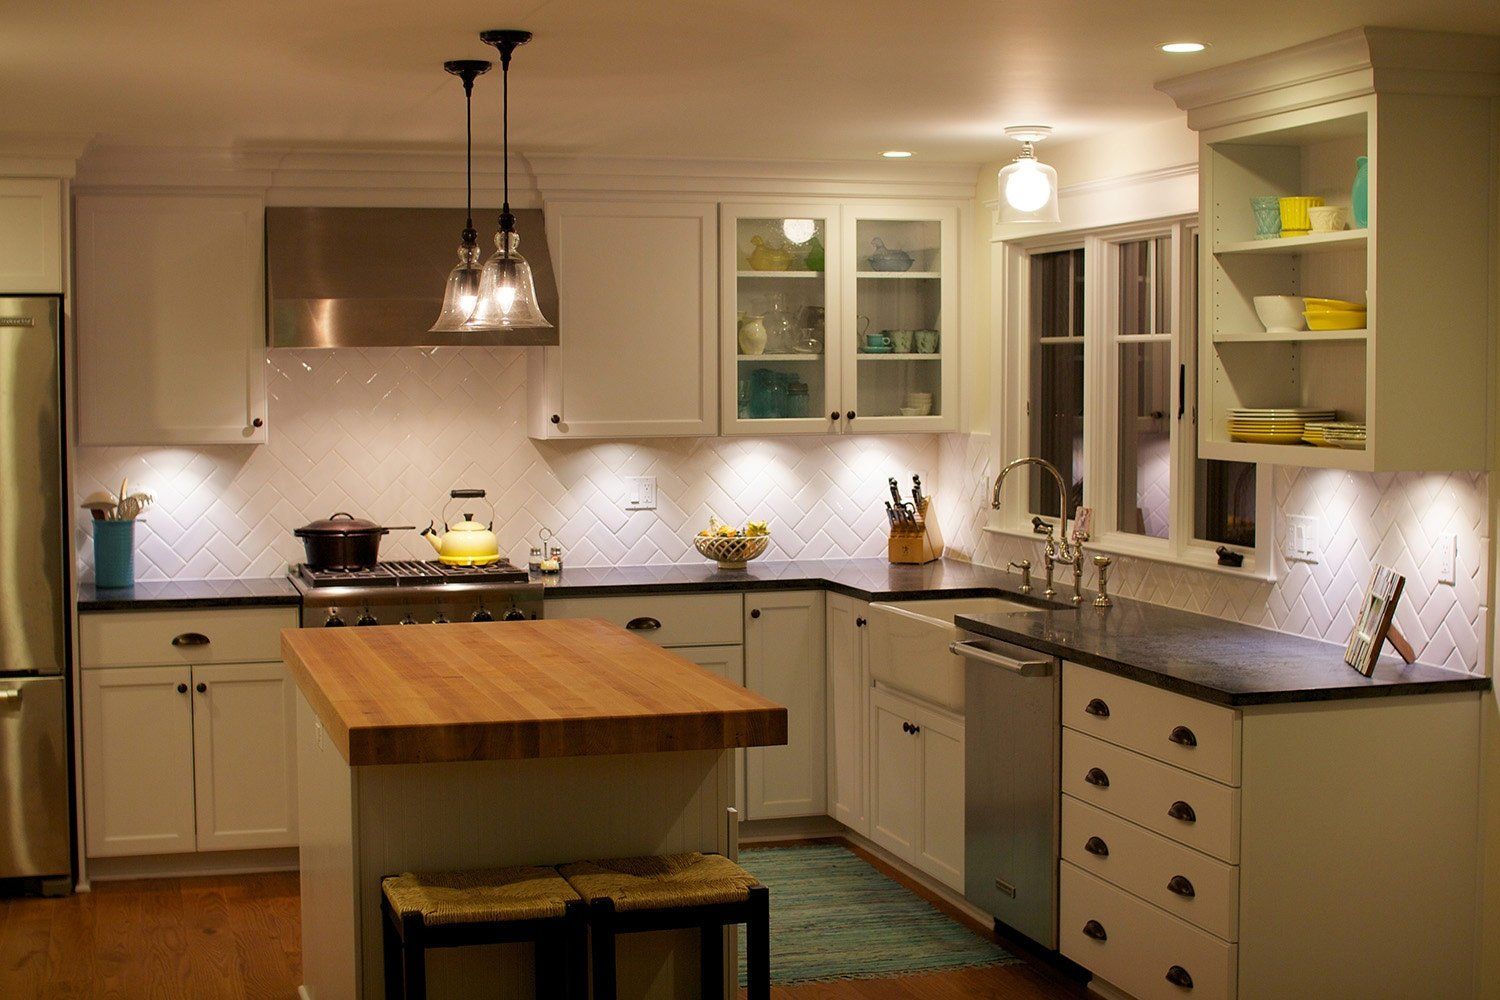 Освещение на кухне: правила, фото, советы дизайнера :: Дизайн :: РБК Недвижимость